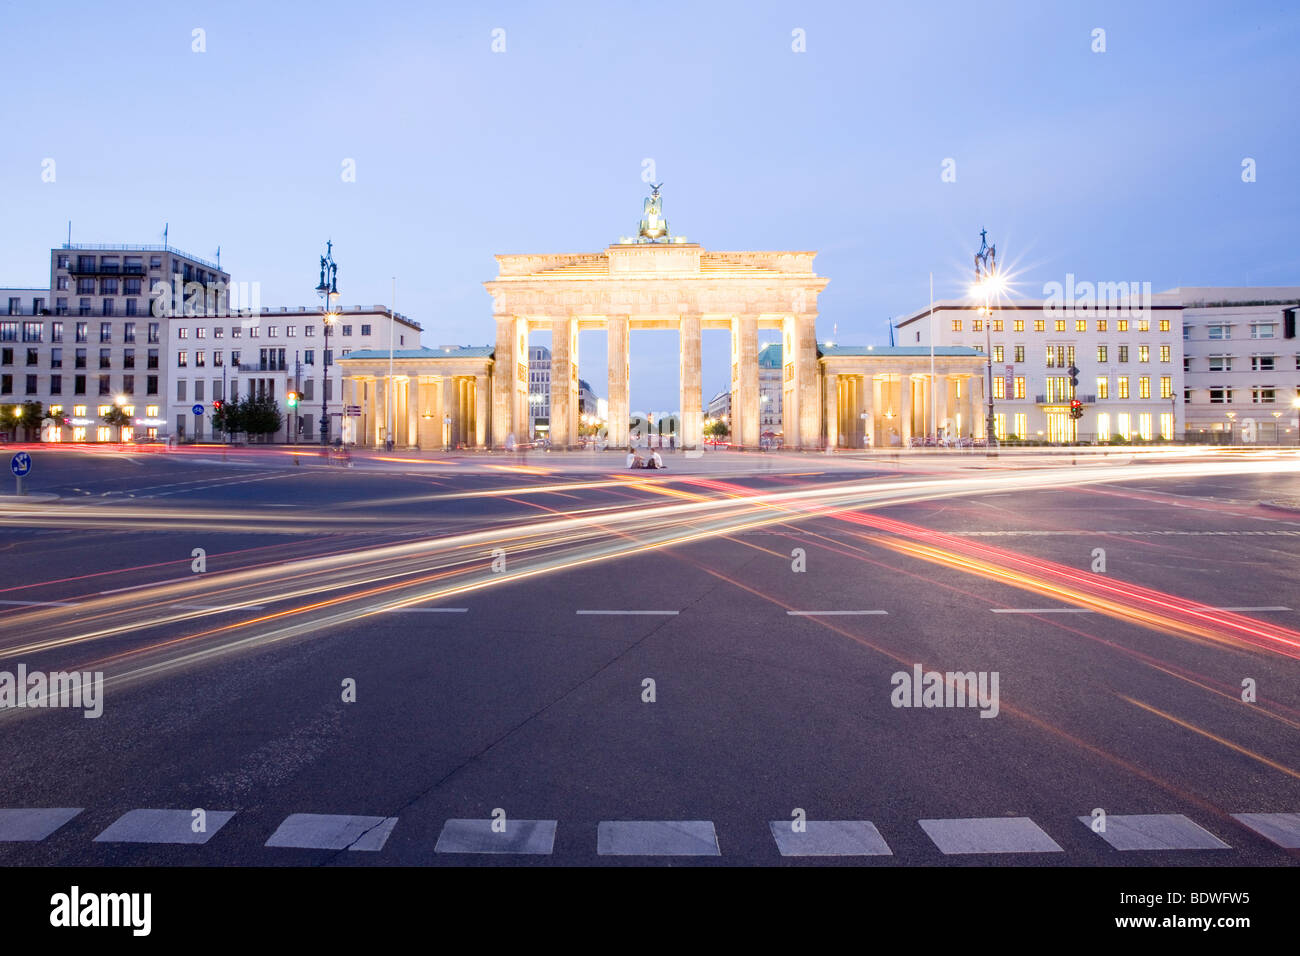 Porte de Brandebourg, Berlin, Germany, Europe Banque D'Images